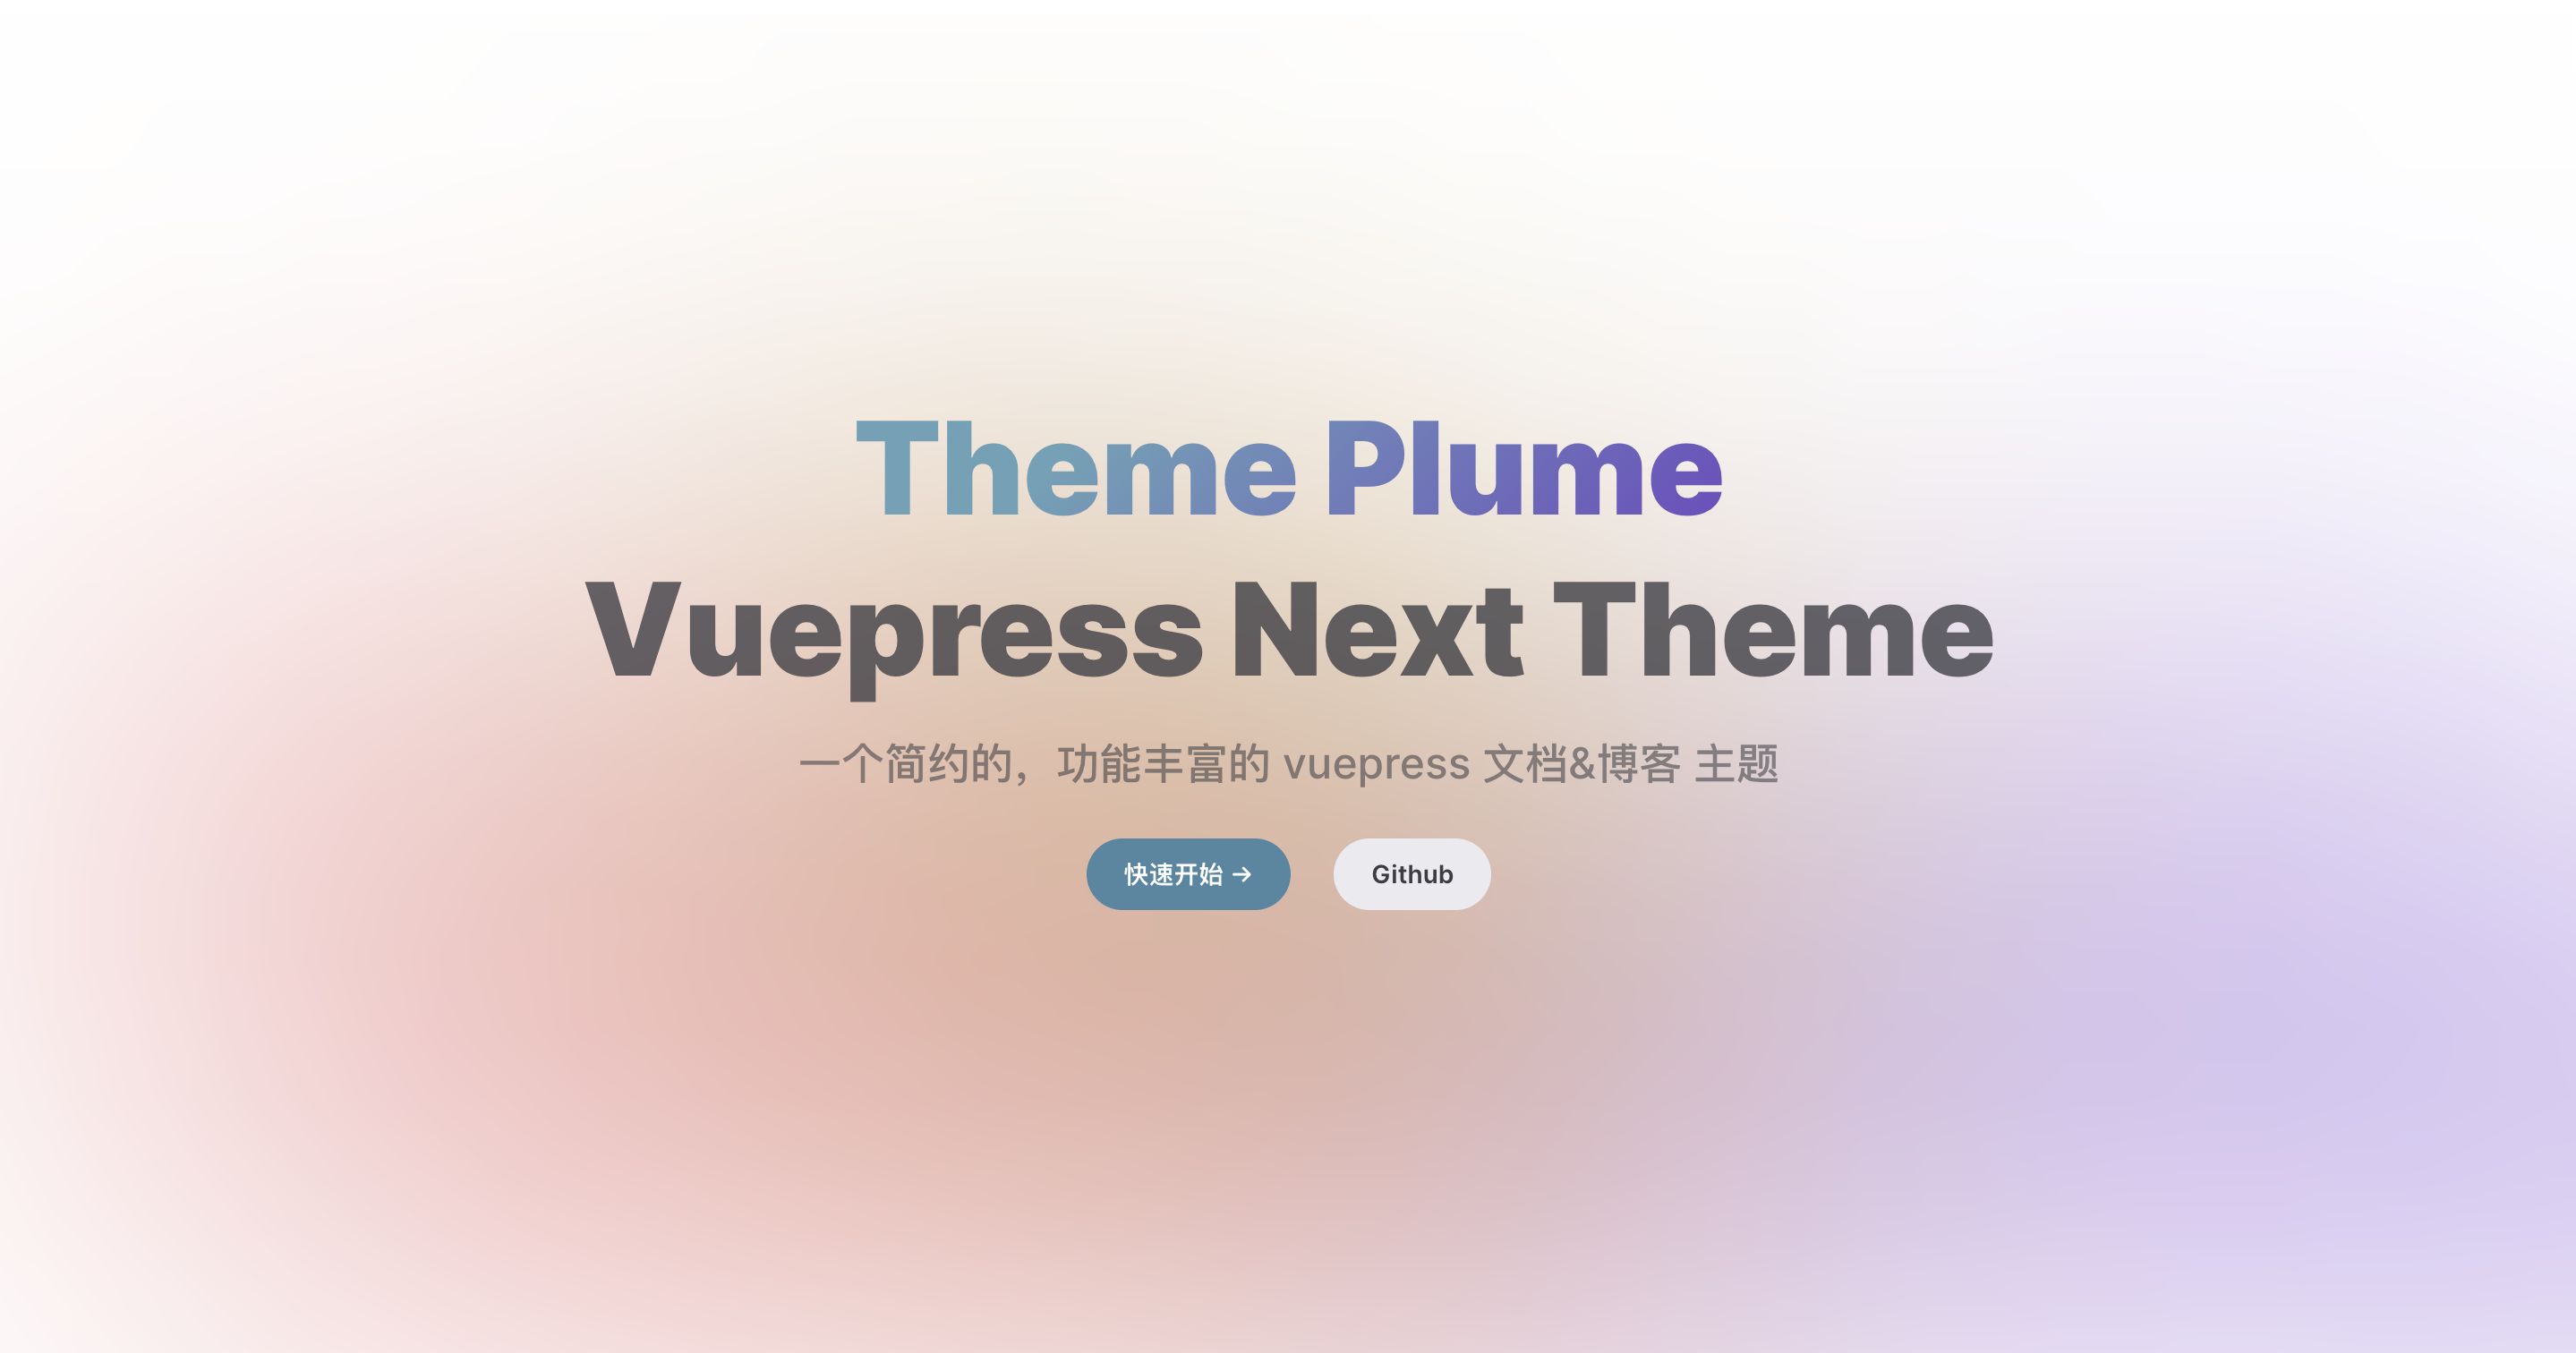 Theme Plume